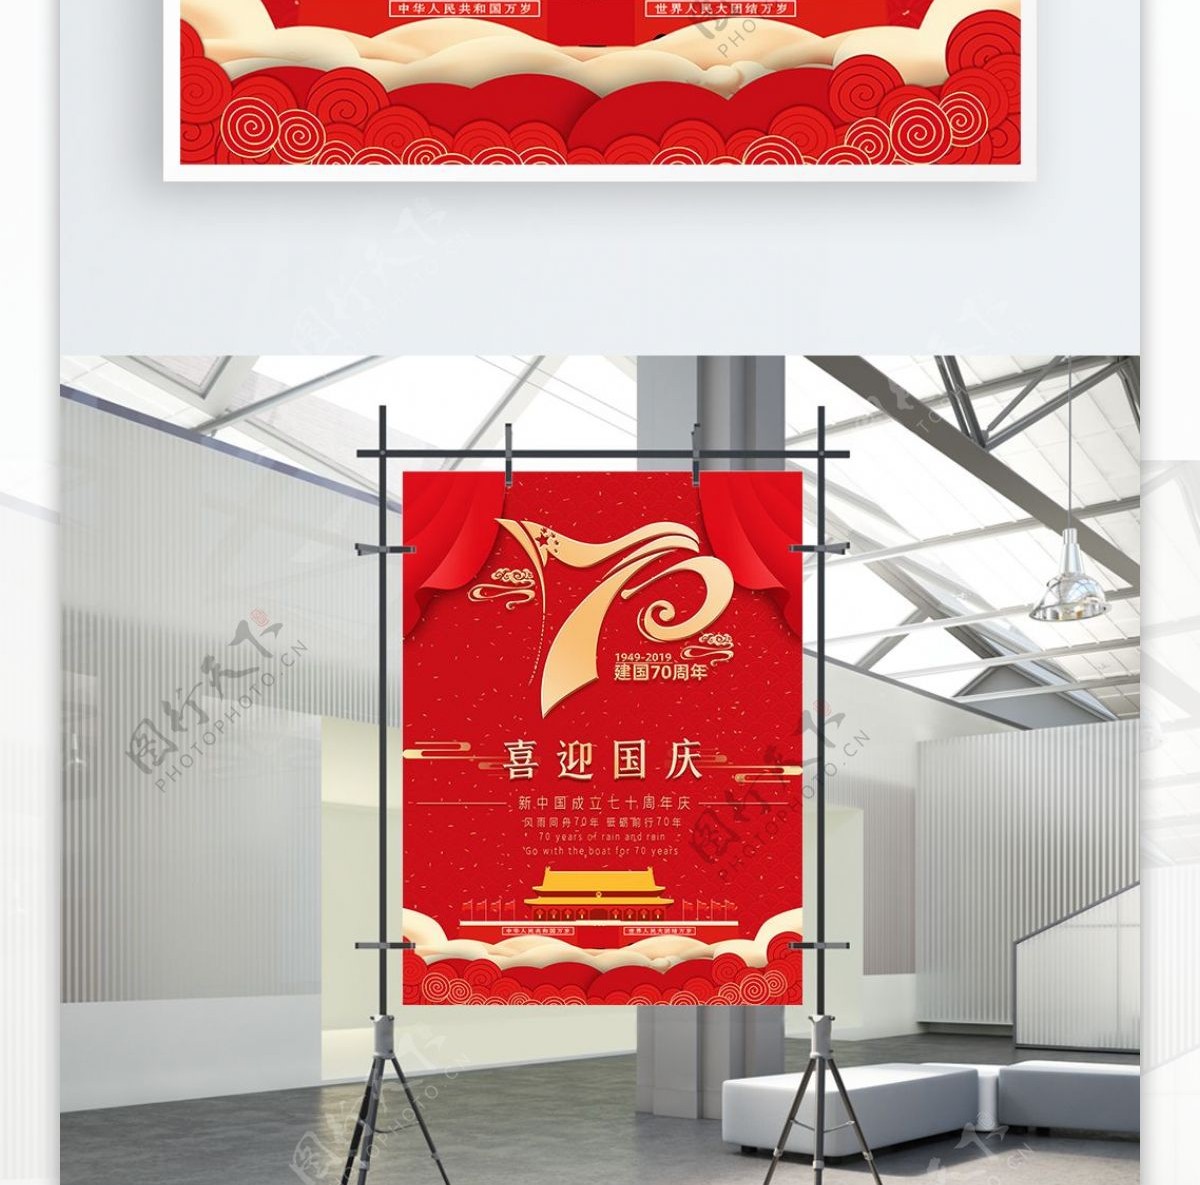 70周年国庆节纪念日宣传海报